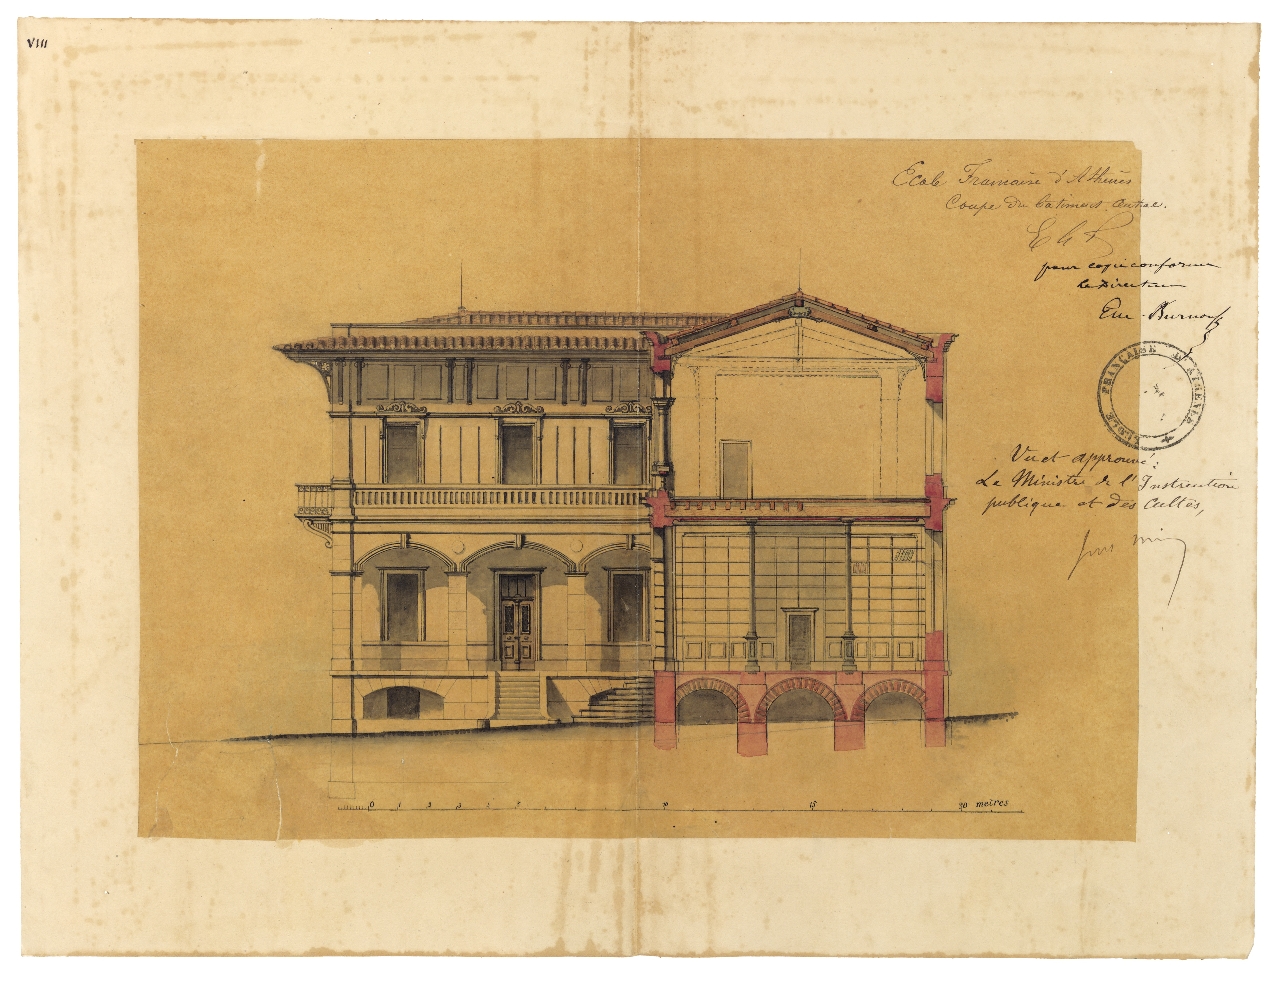 Élévation et coupe du bâtiment principal de l’École française d’Athènes, ca. 1872. Université de Lorraine, fonds Burnouf 41-2, 7